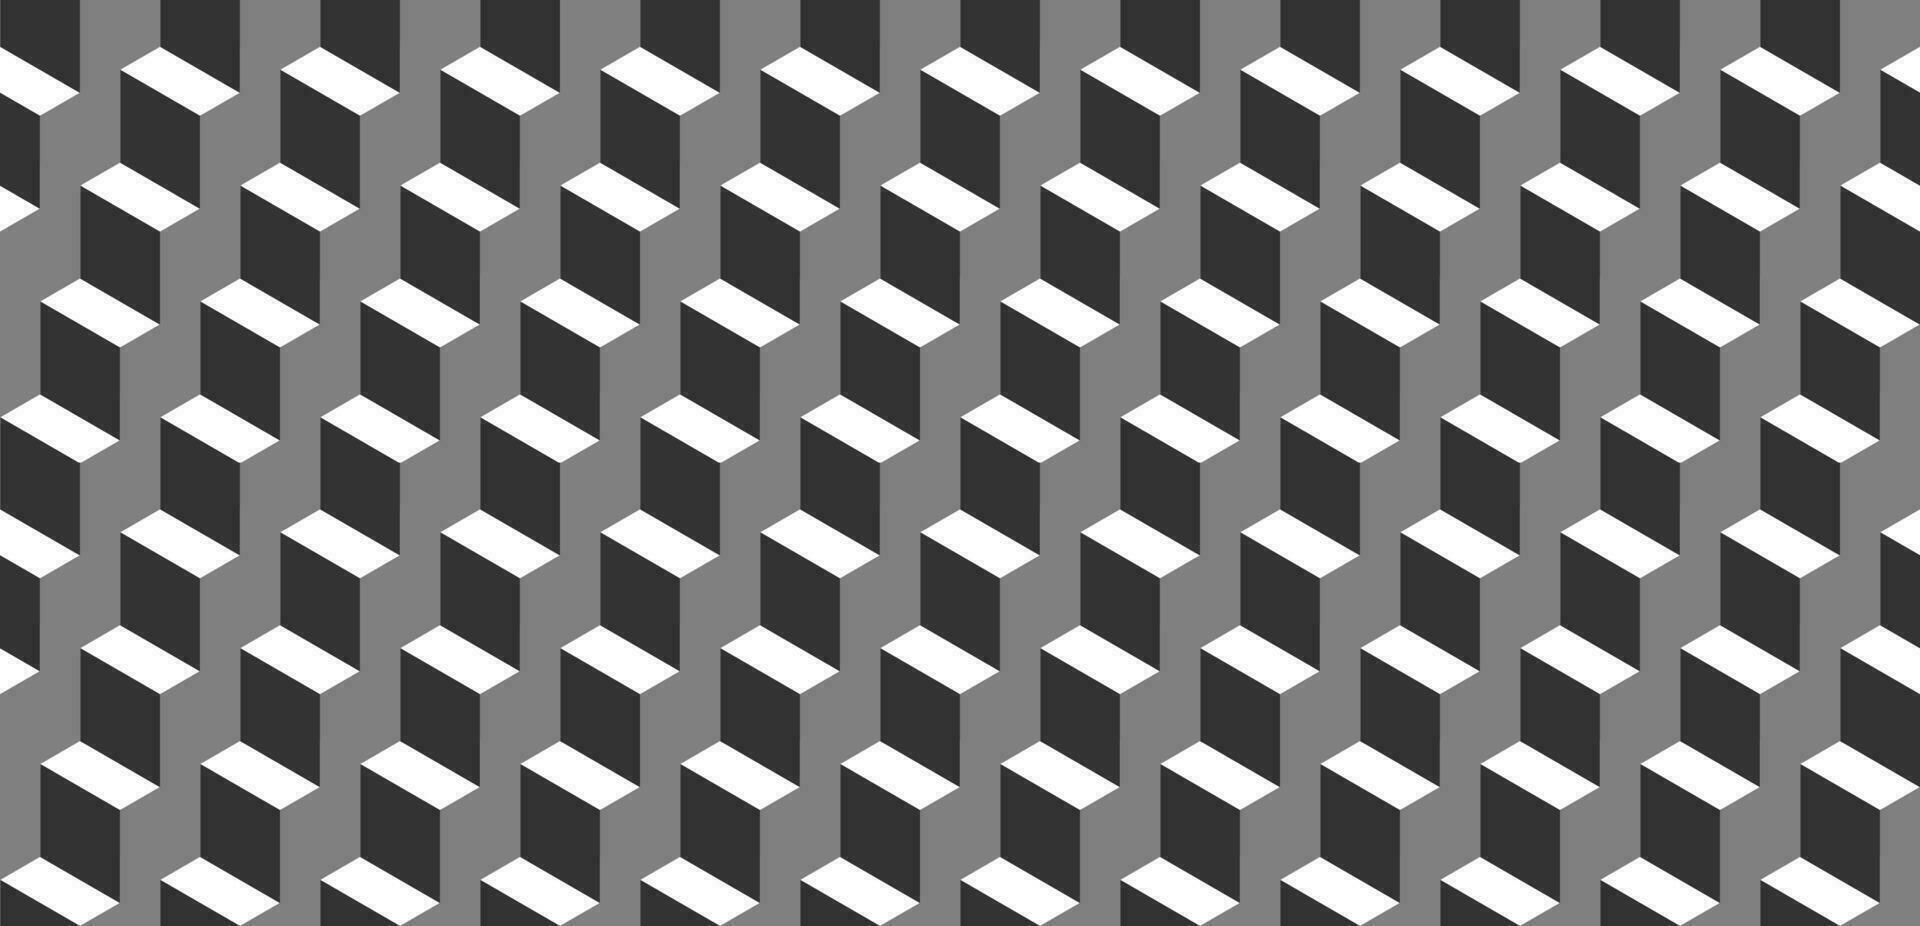 sömlös geometrisk mönster. vektor bakgrund tillverkad av kuber i isometri. upprepa geometrisk former i svart och vit.